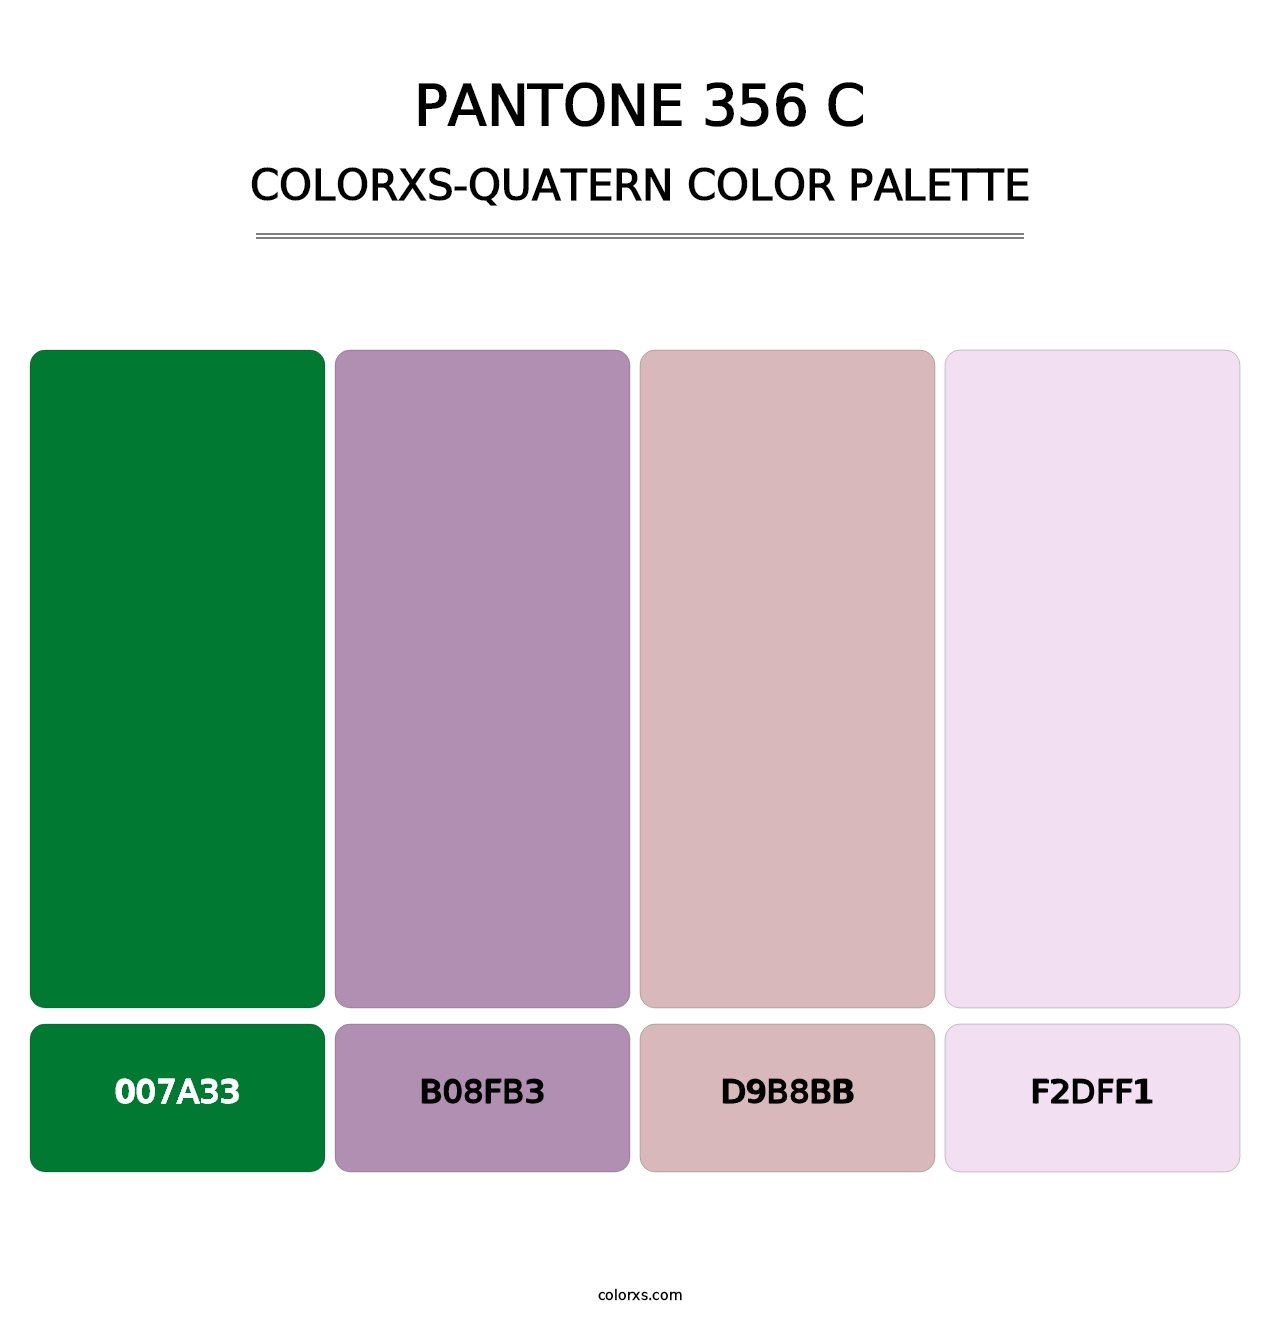 PANTONE 356 C - Colorxs Quatern Palette